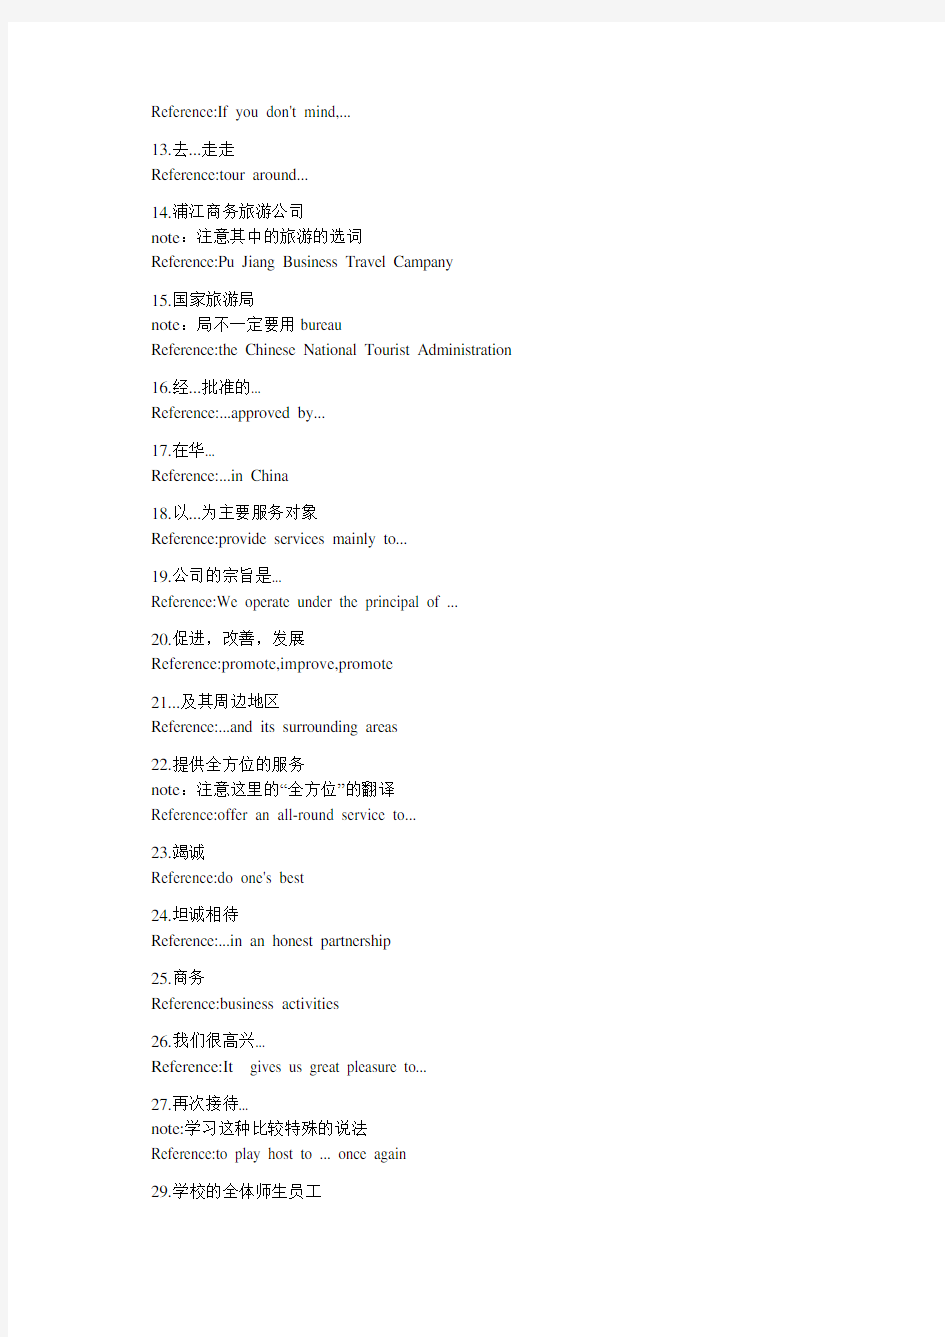 上海市中级口译考试总结出来的269个语言点